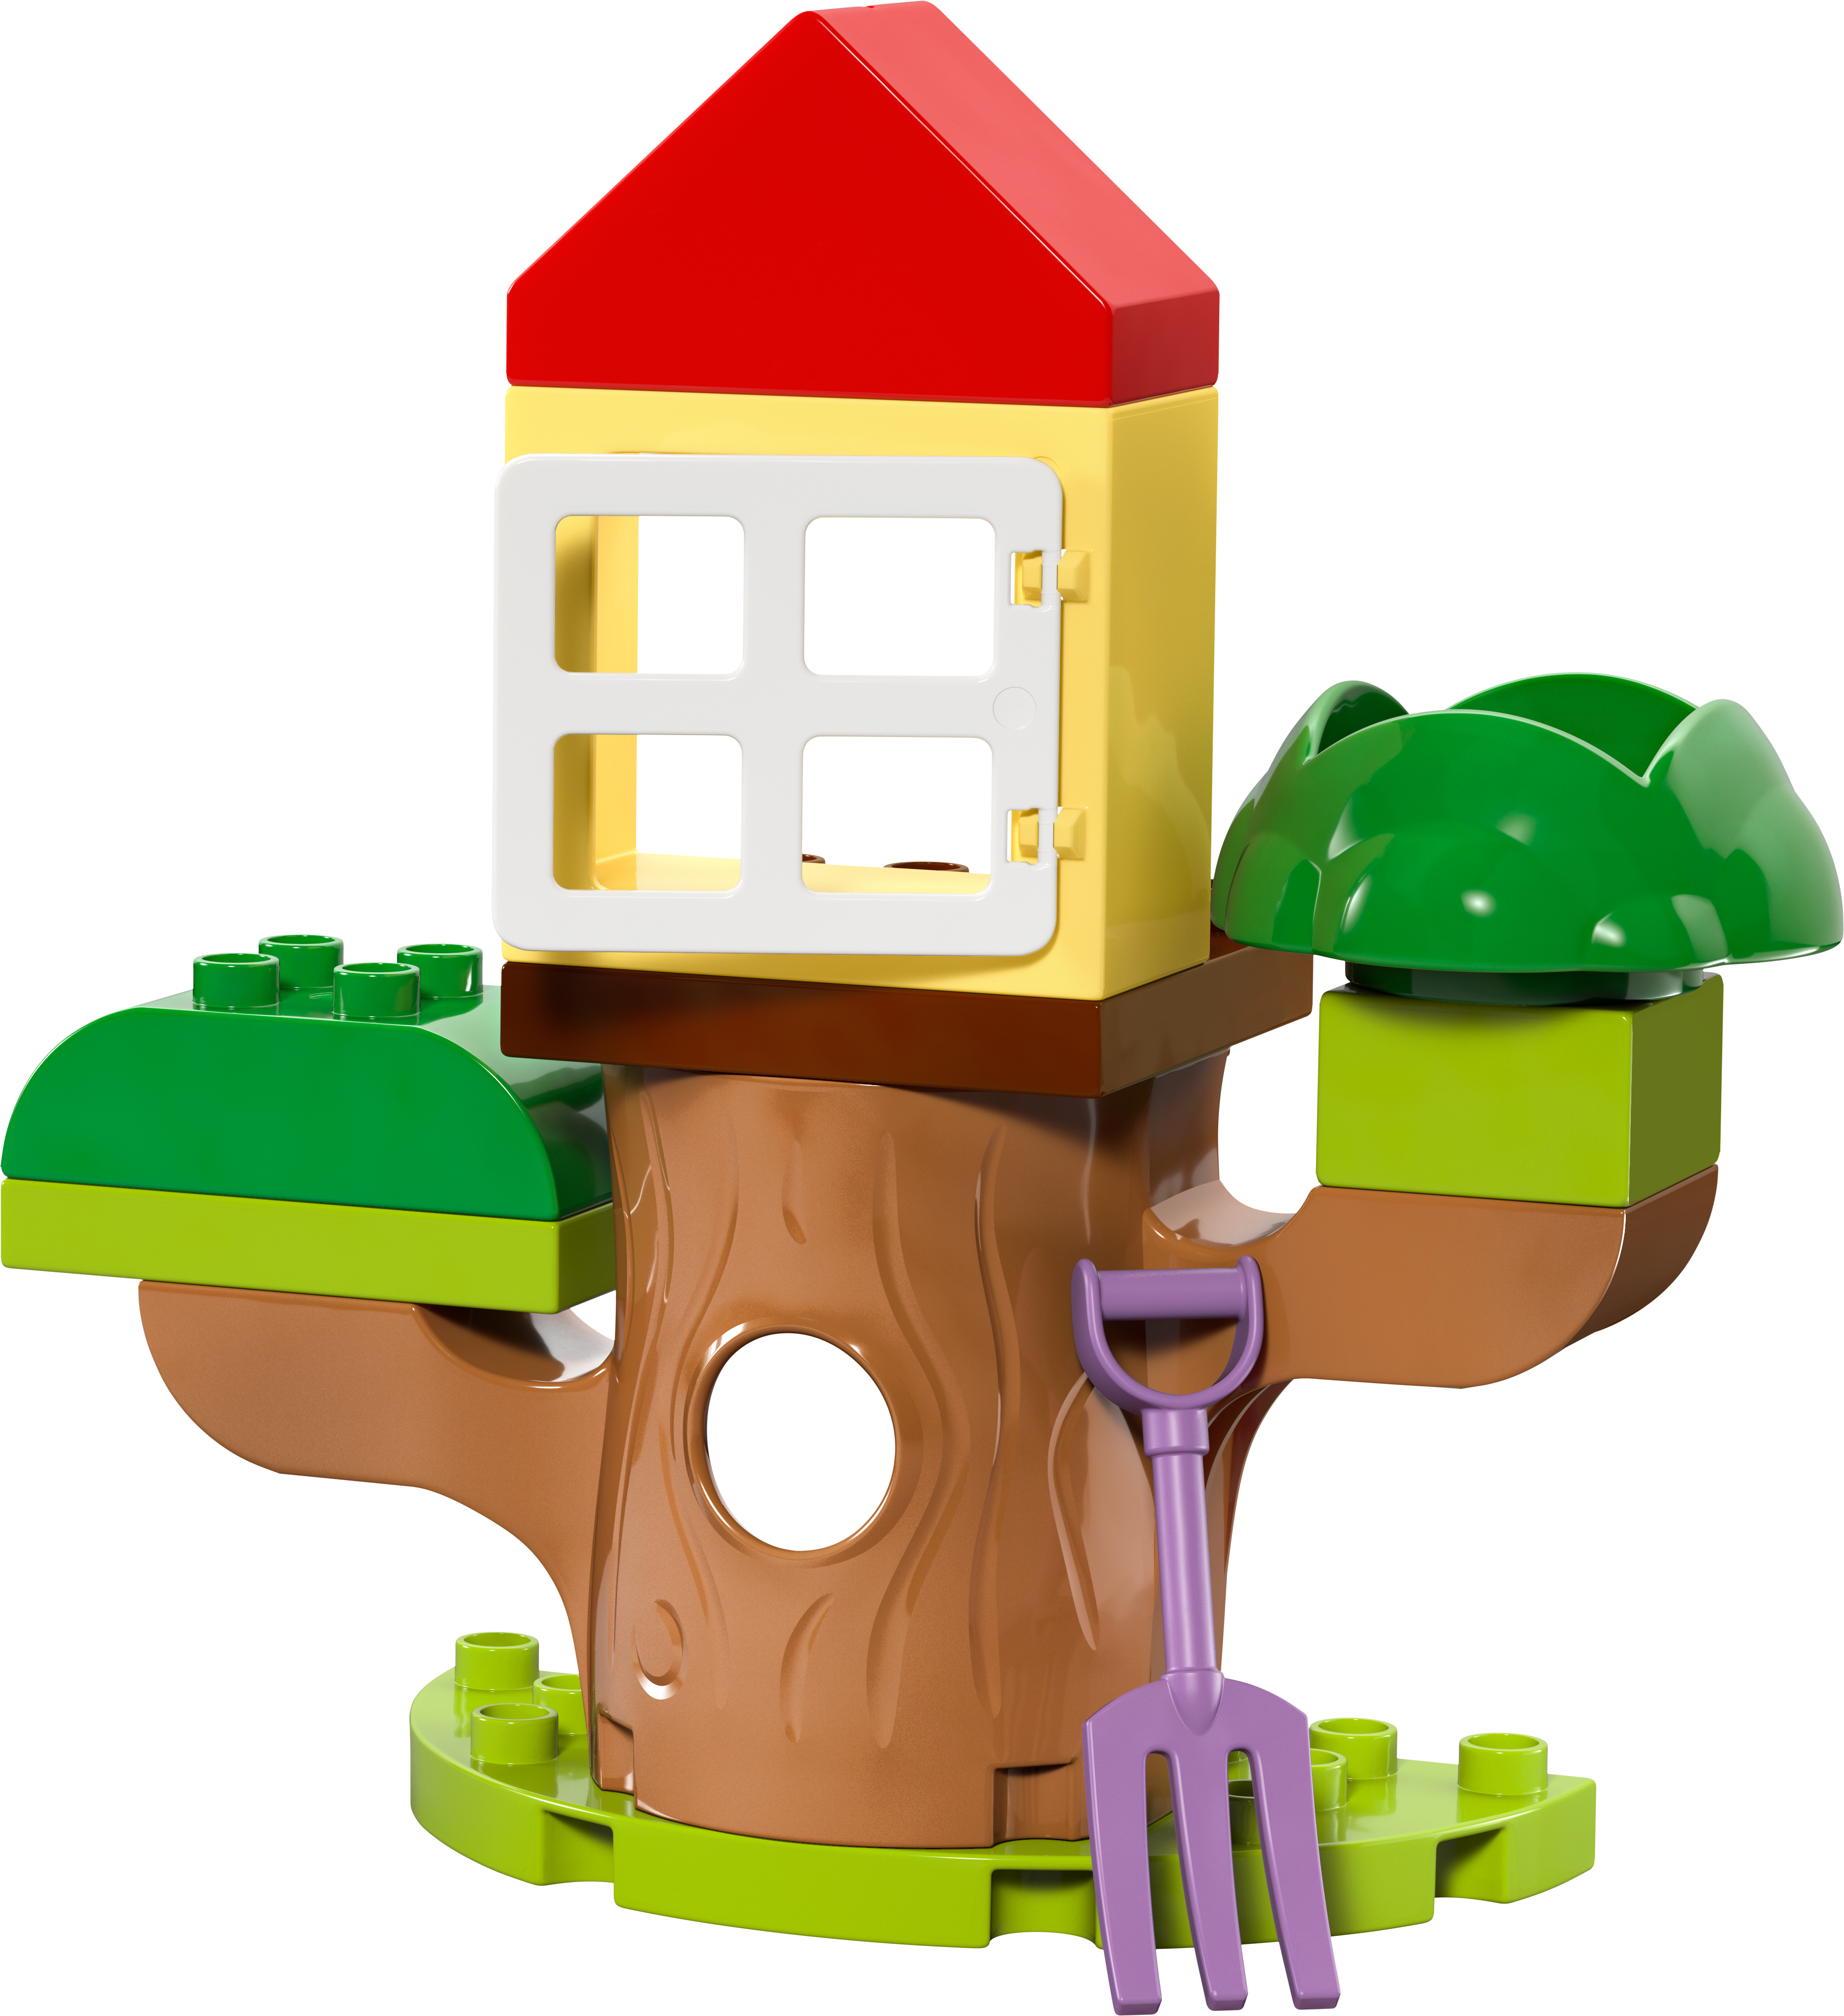 10431 Lego Duplo Peppa Pig Сад и домик на дереве Пеппыфото5